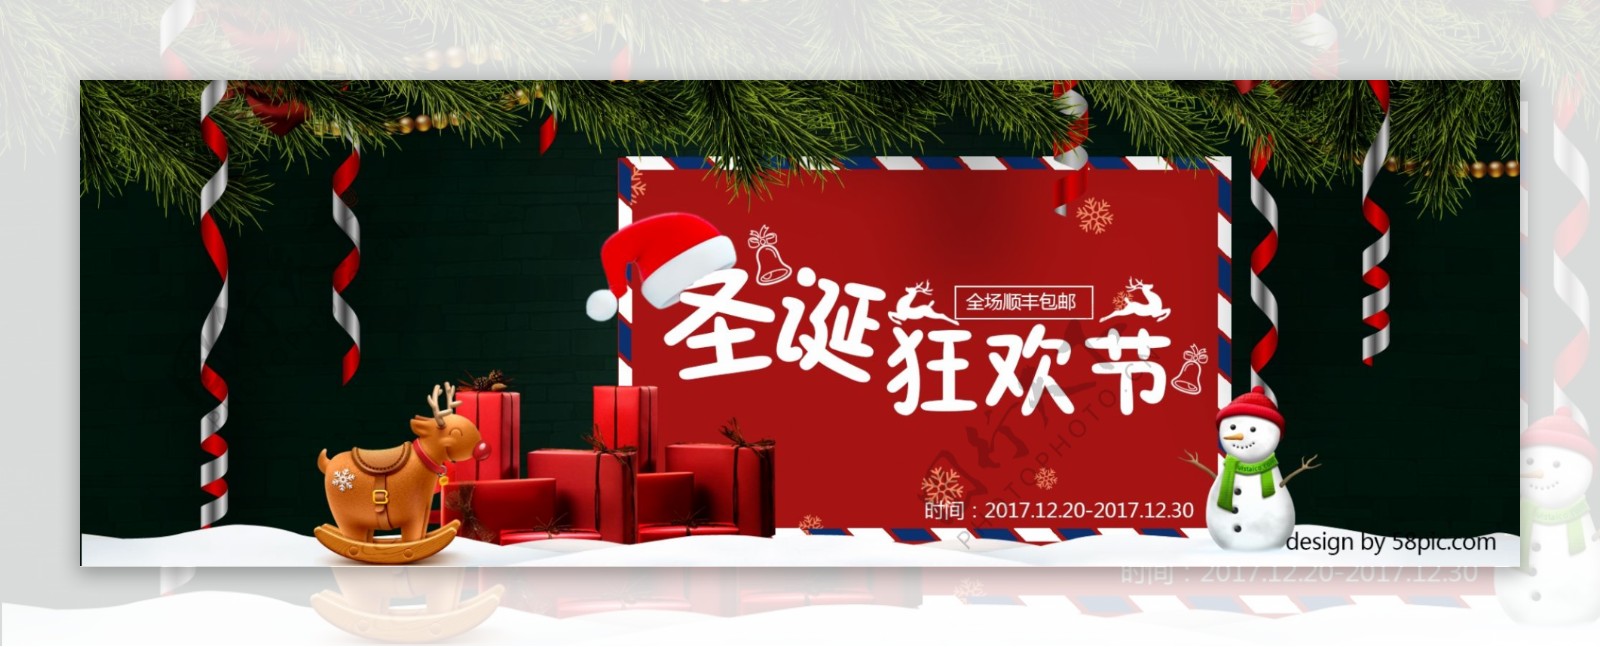 绿色礼盒圣诞节促销banner